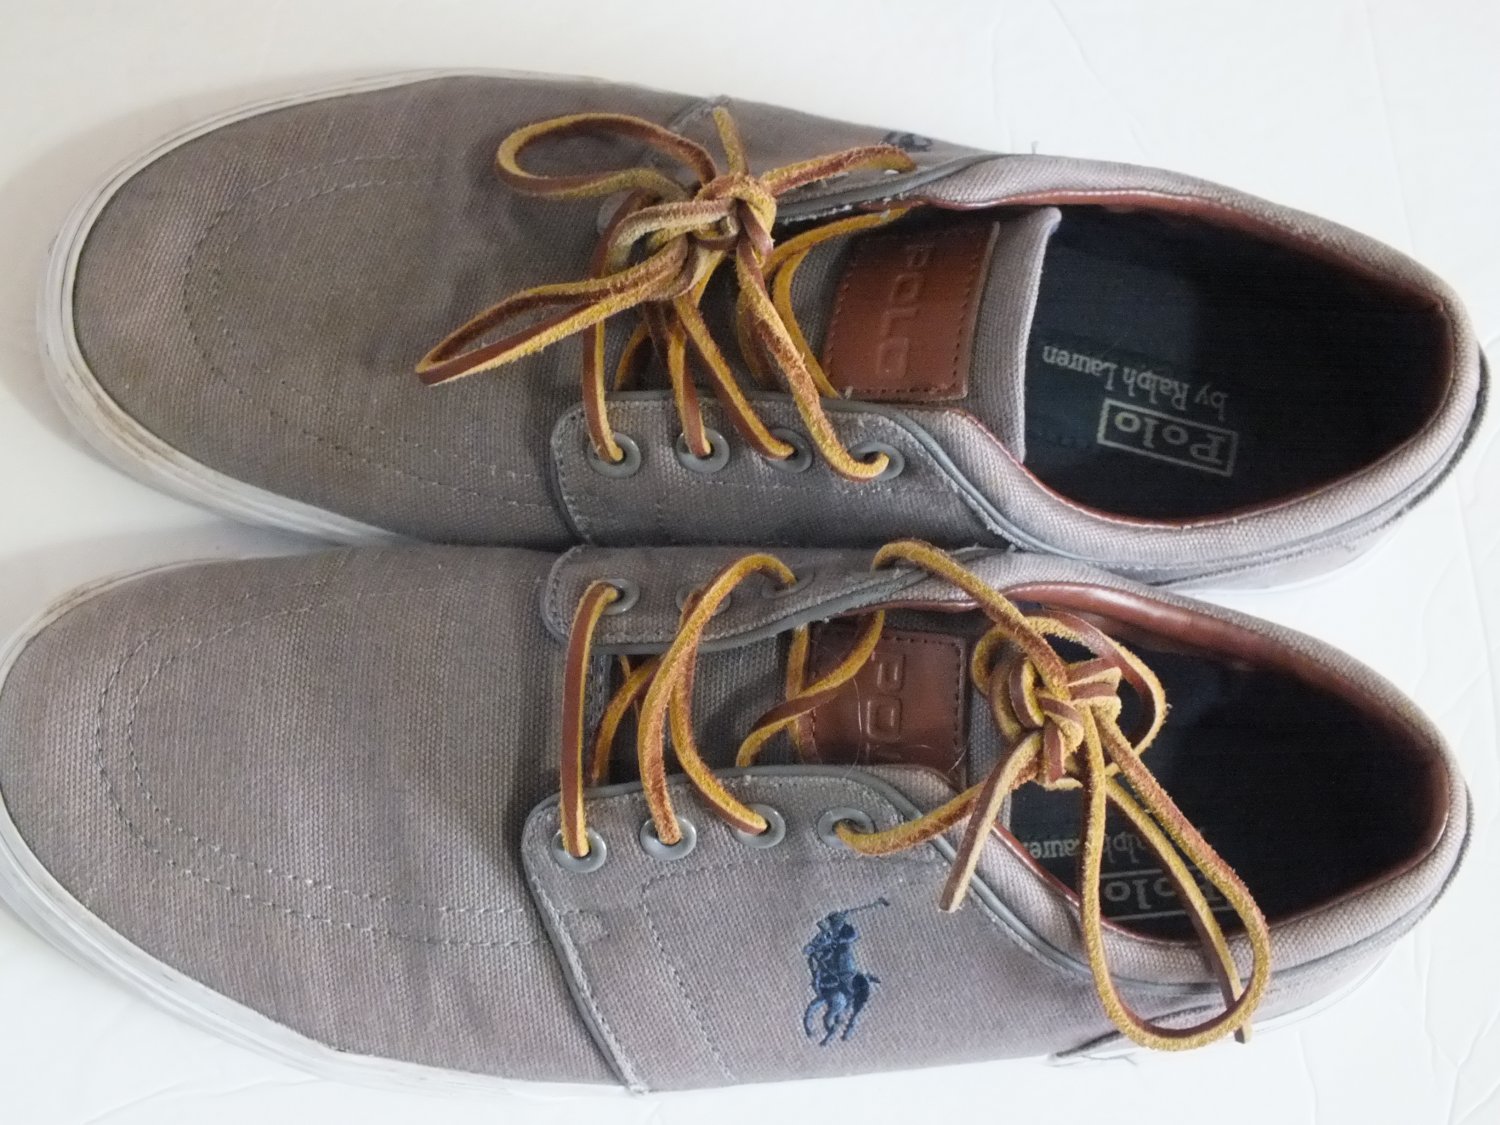 Polo by Ralph Lauren faxon low boat shoes gray canvas men size 10 D